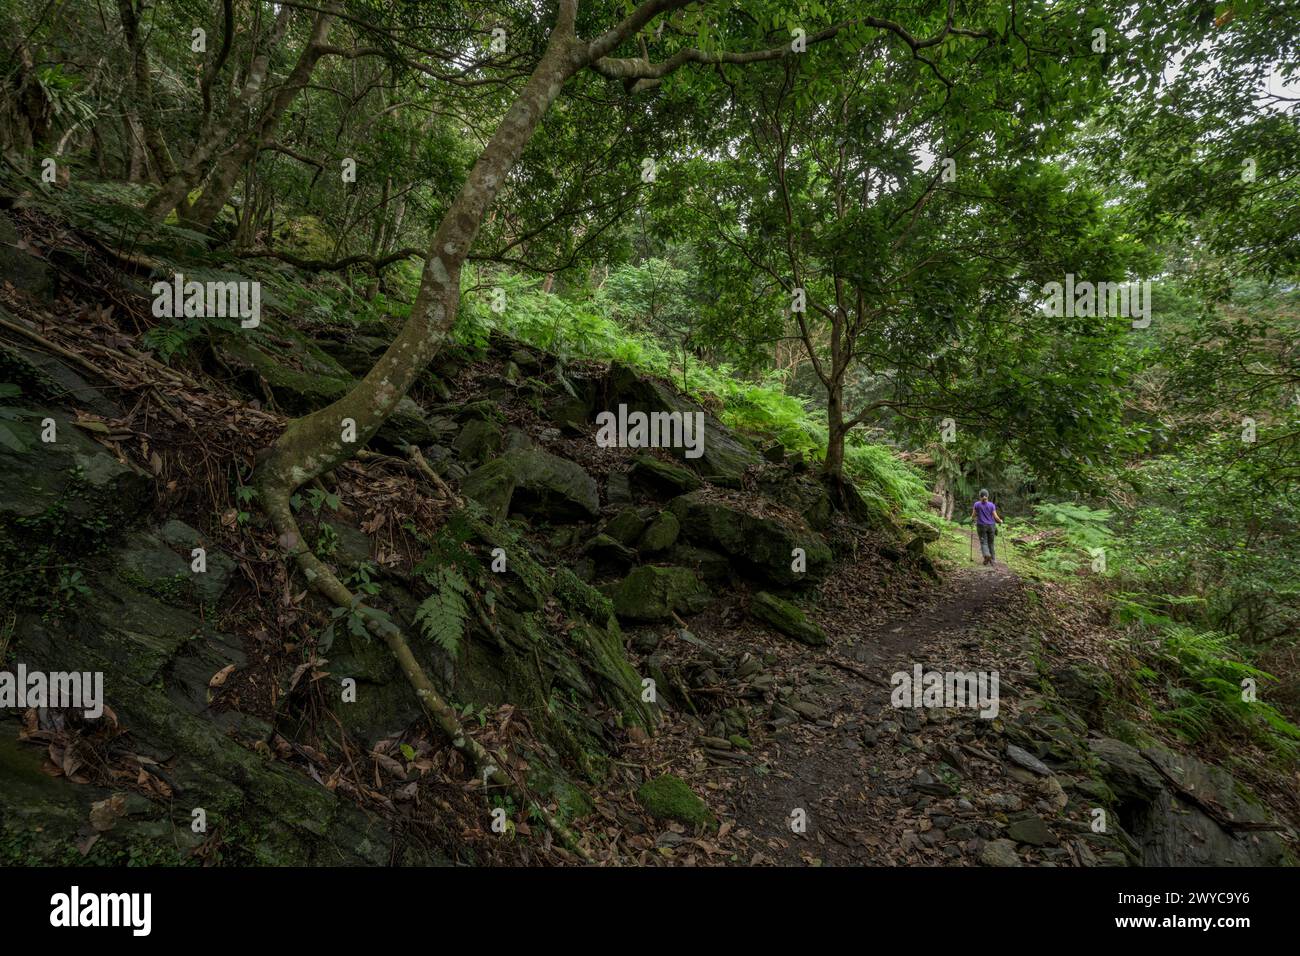 Un escursionista cammina leggermente su un isolato sentiero forestale circondato da felci sovrastanti e dalla serenità della natura indisturbata Foto Stock